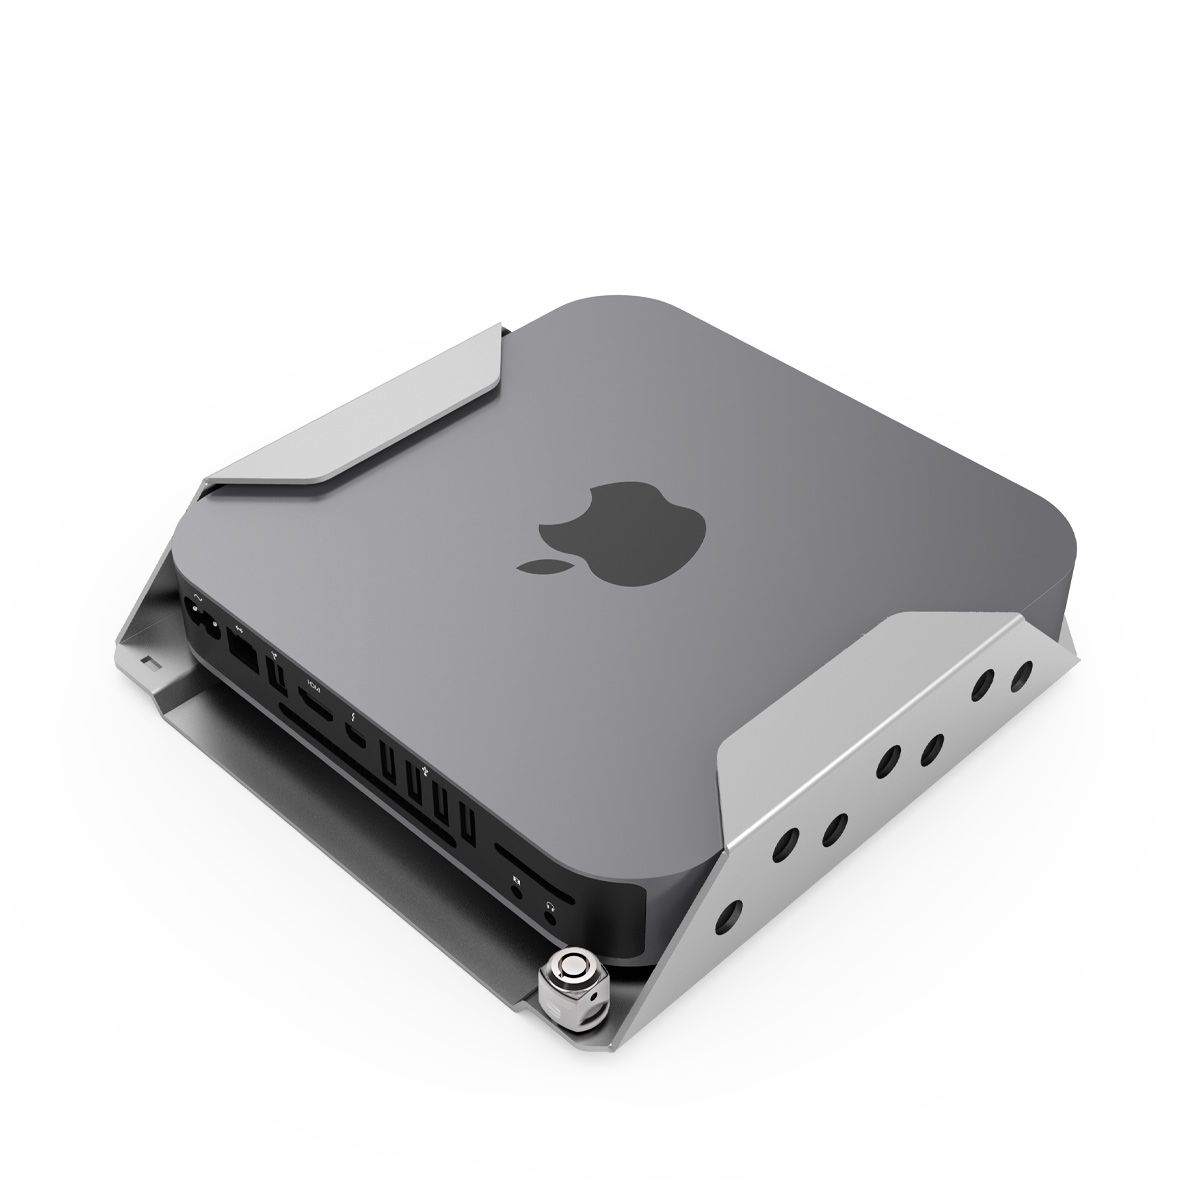 Support Antivol Mac, Mac Mini, Mac studio, Apple TV